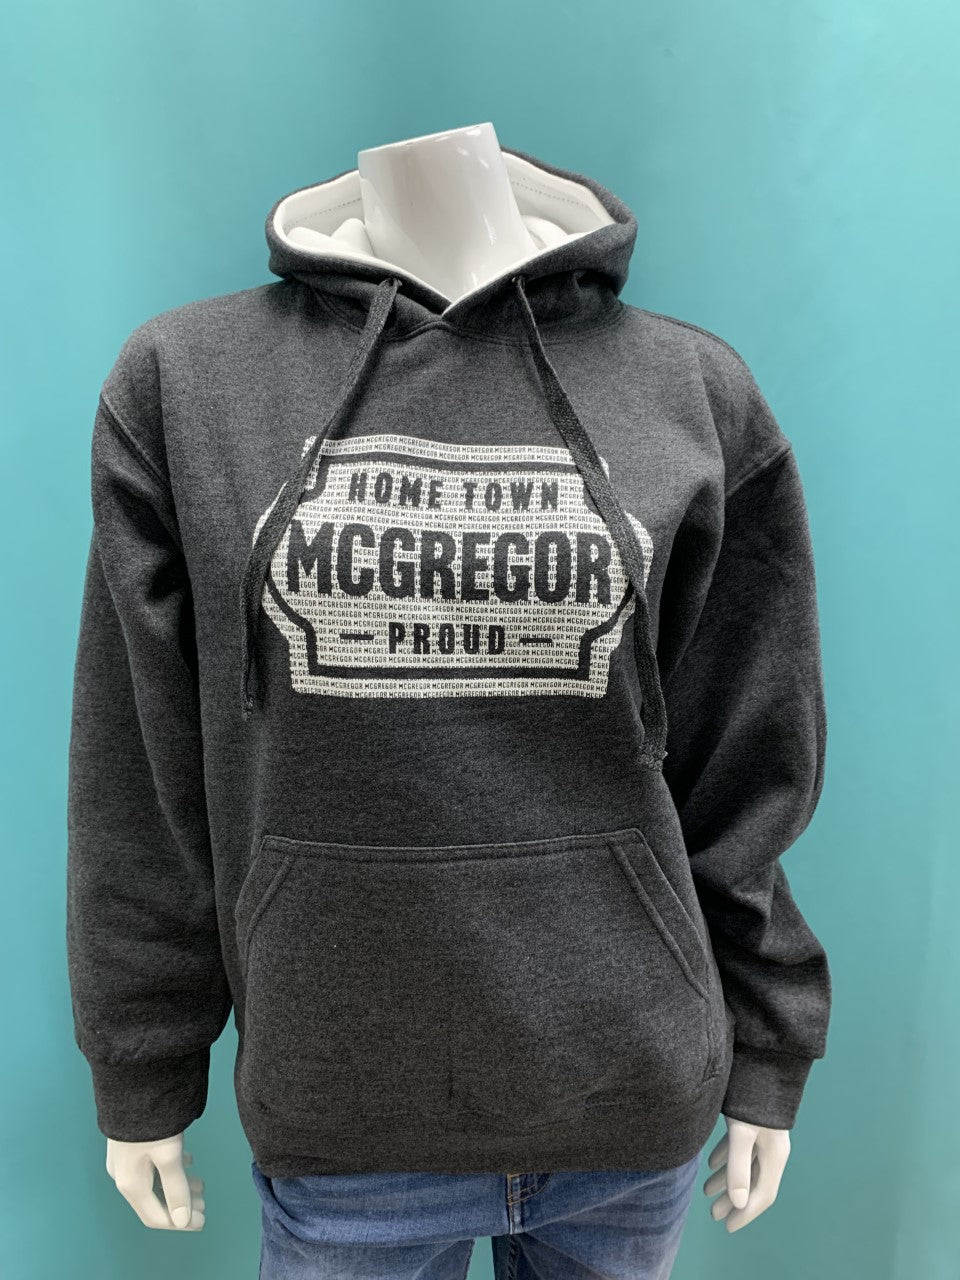 Hometown McGregor Proud Hoodie - Charcoal